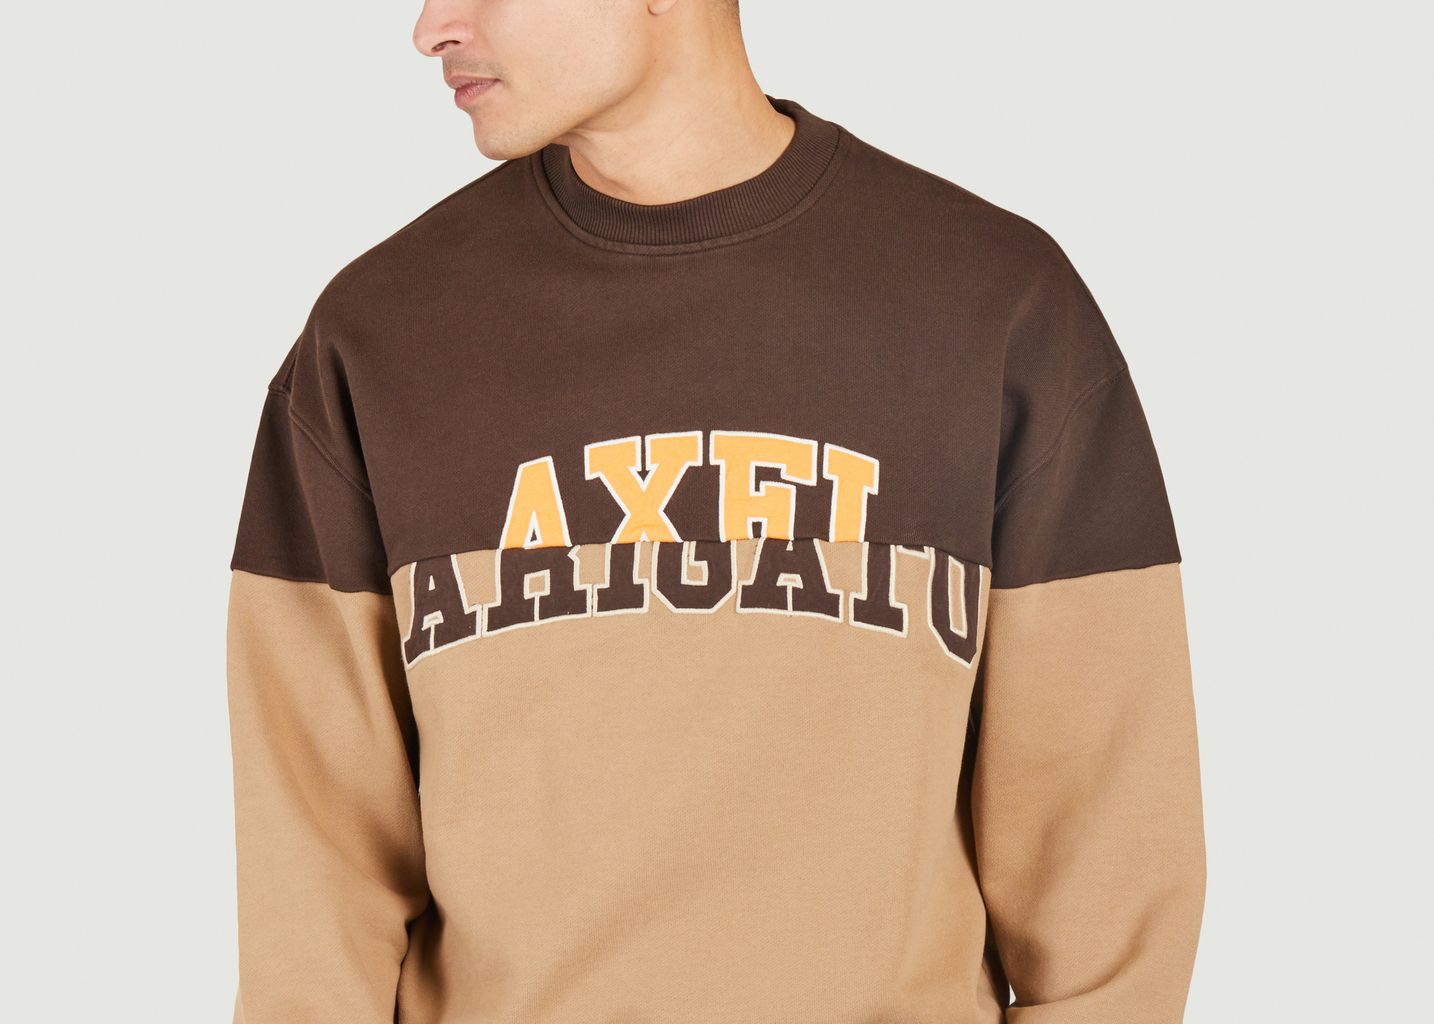 Unify Sweatshirt - Axel Arigato